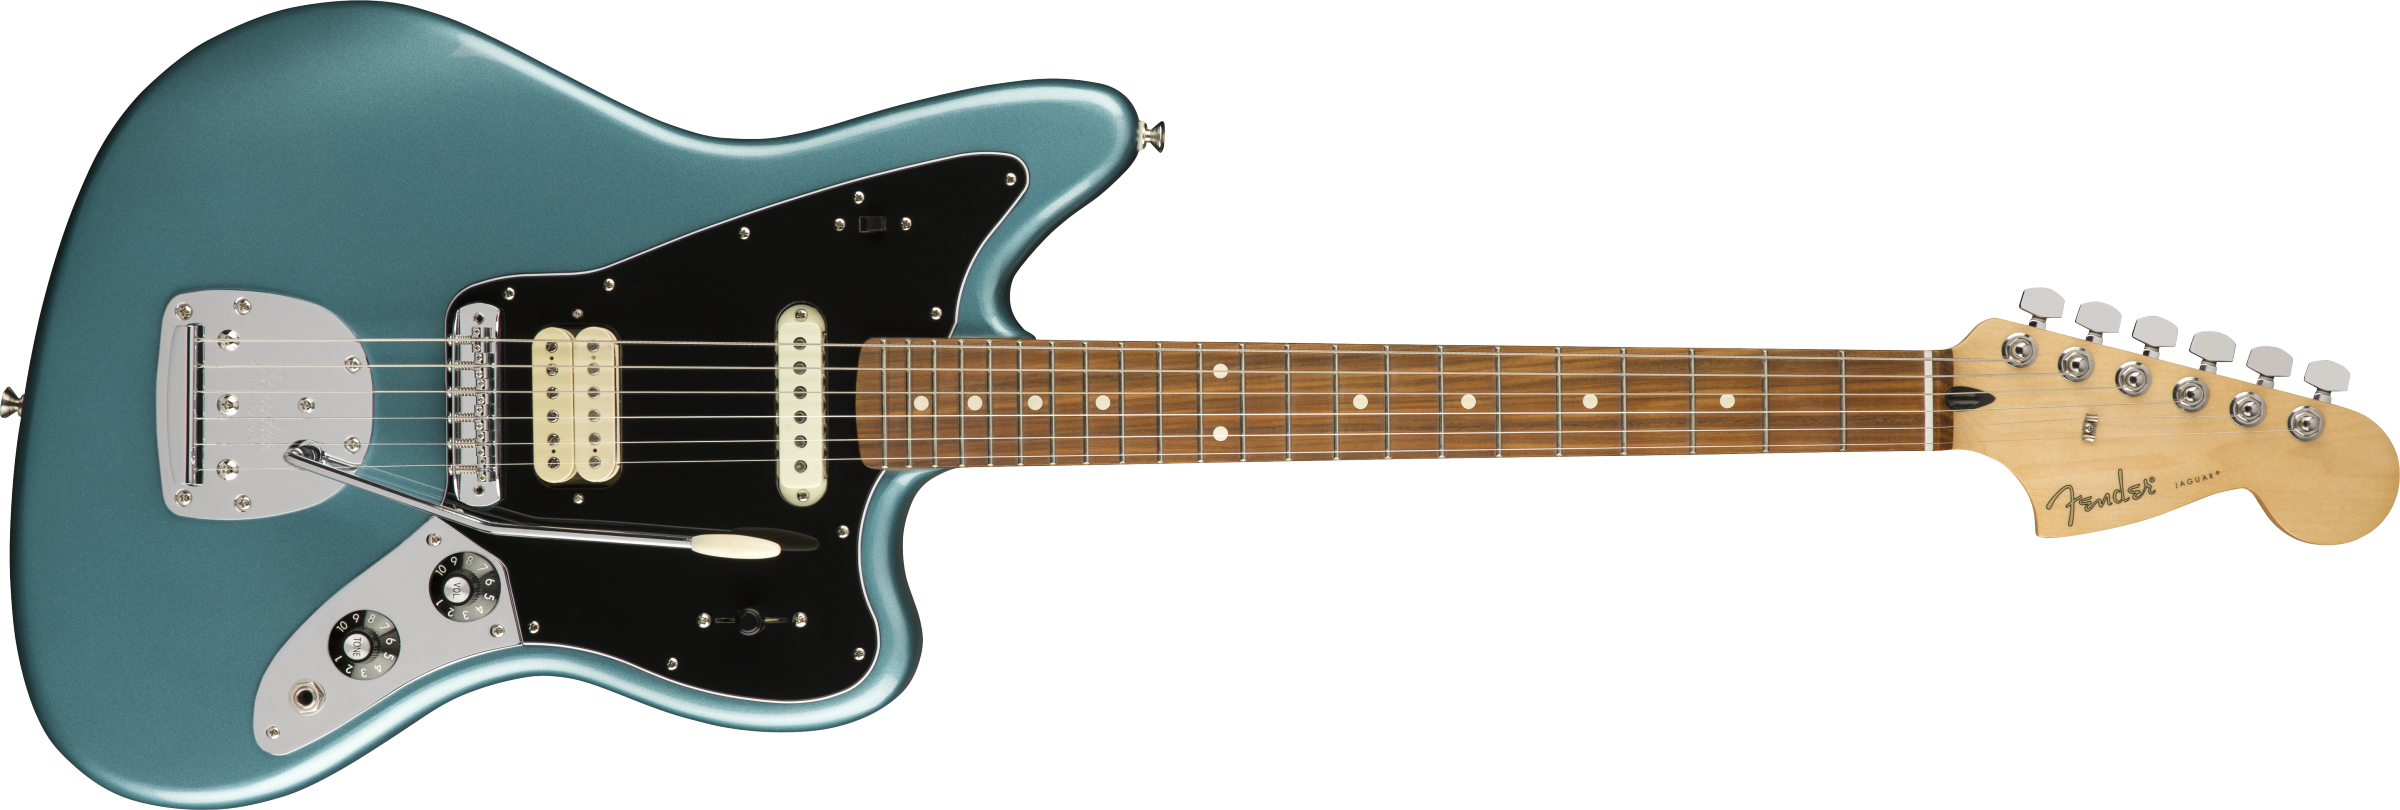 Billede af Fender Player Jaguar El-guitar (Tidepool)